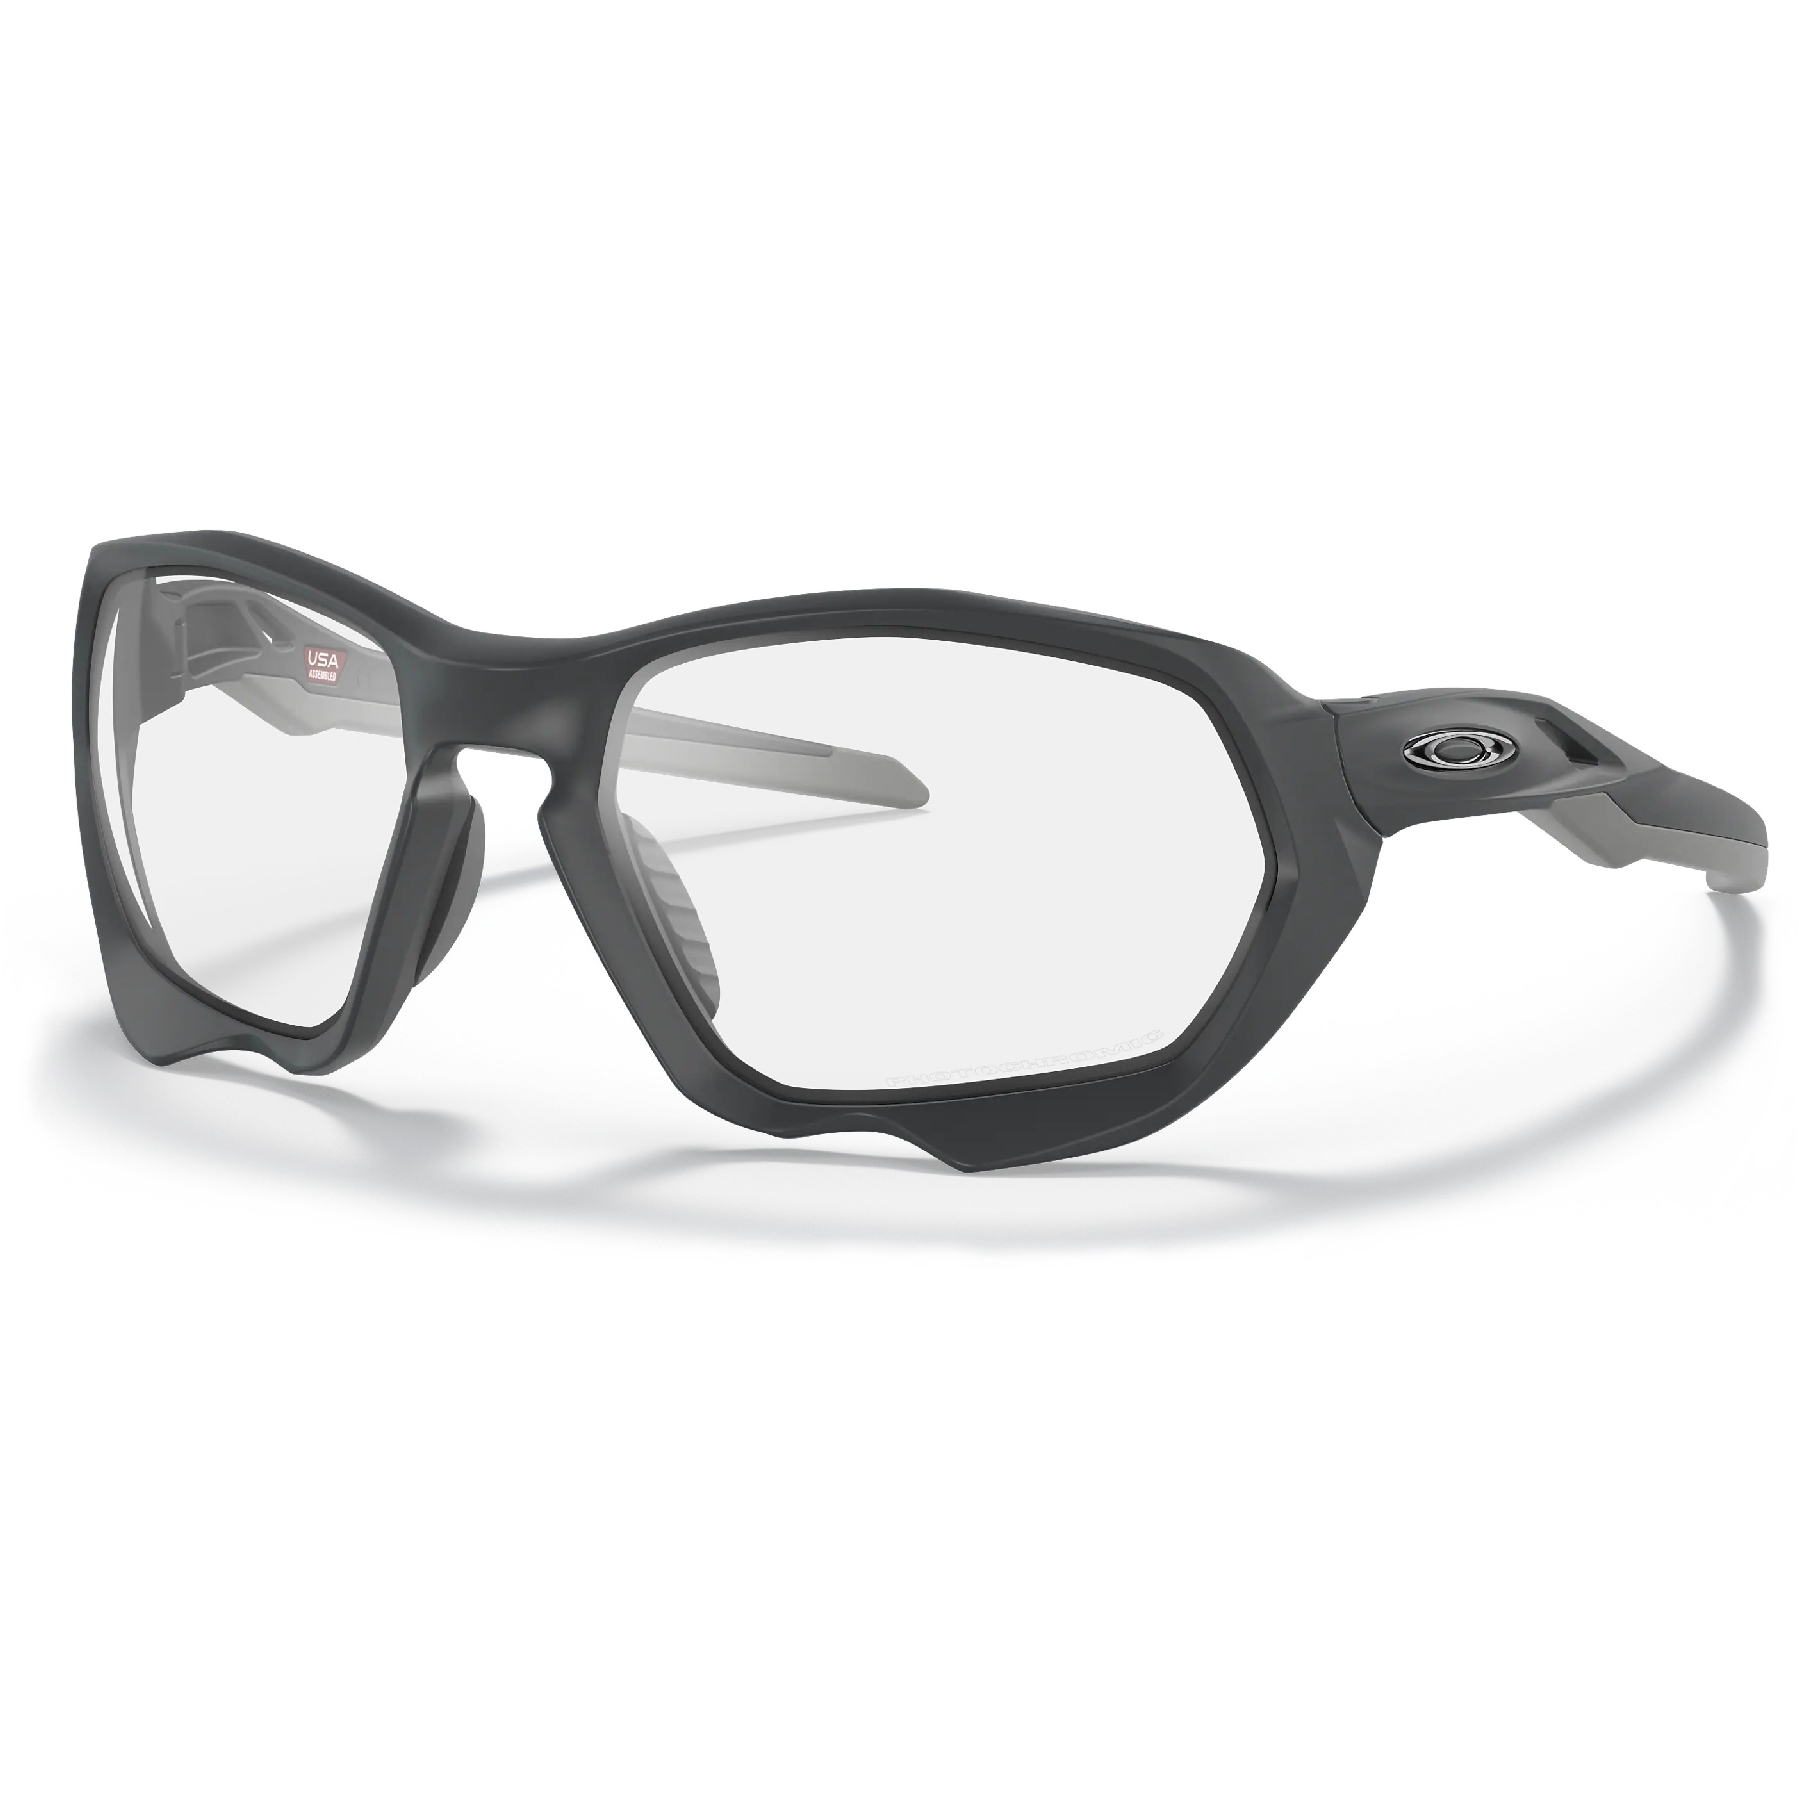 Produktbild von Oakley Plazma Brille - Matte Carbon/Clear to Black Iridium Photochromic - OO9019-0559